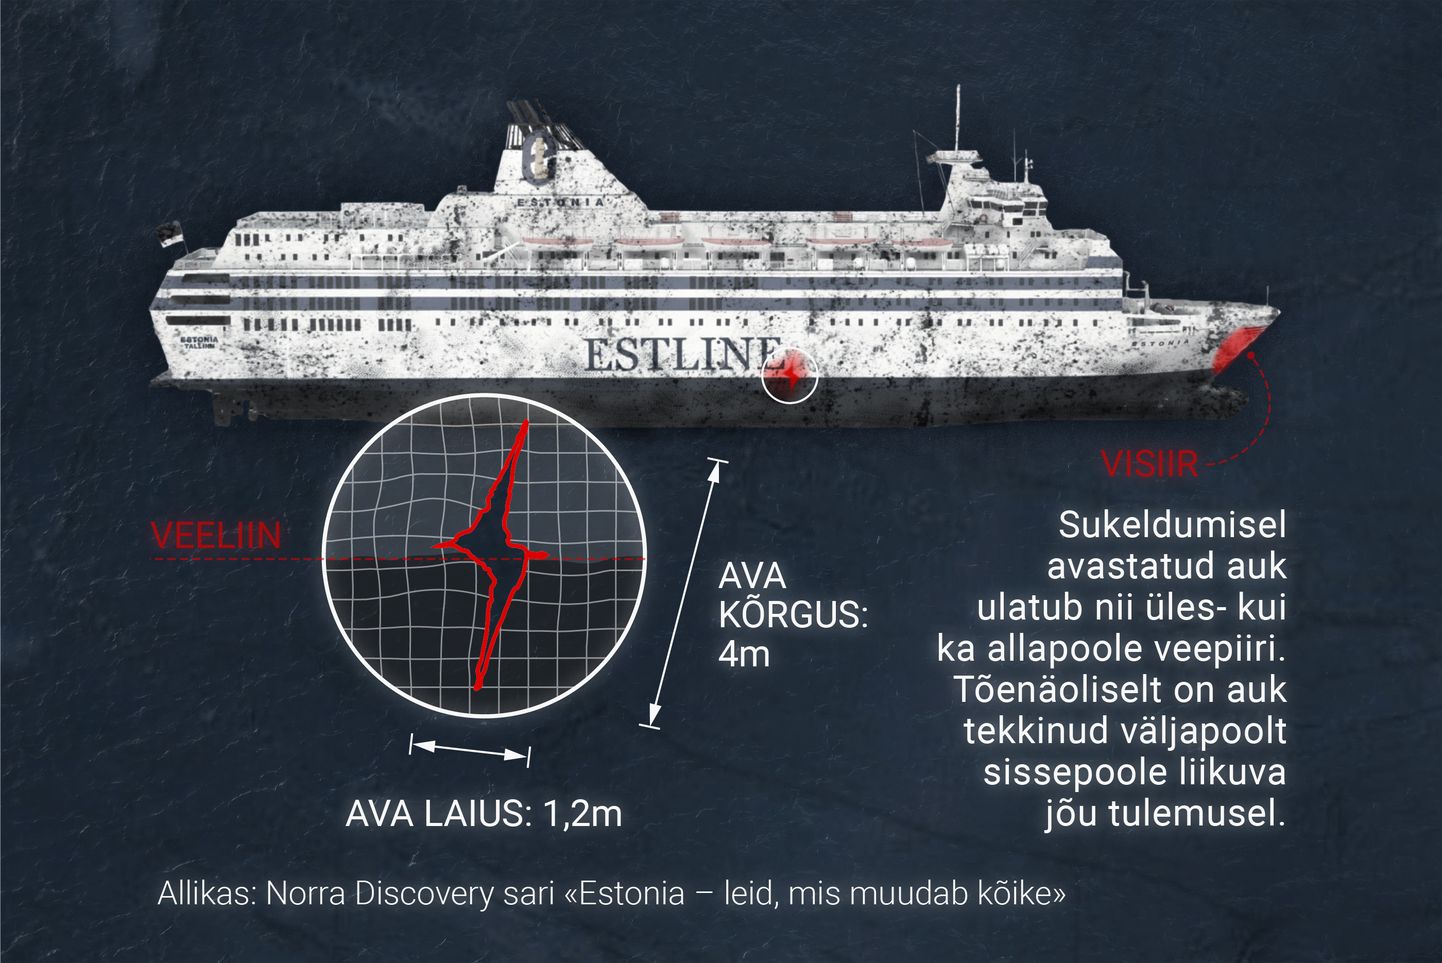 Discovery dokumentaalsarjas «Estonia – leid, mis muudab kõike» näidatud uue augu asukoht parvlaev «Estonia» paremal küljel.